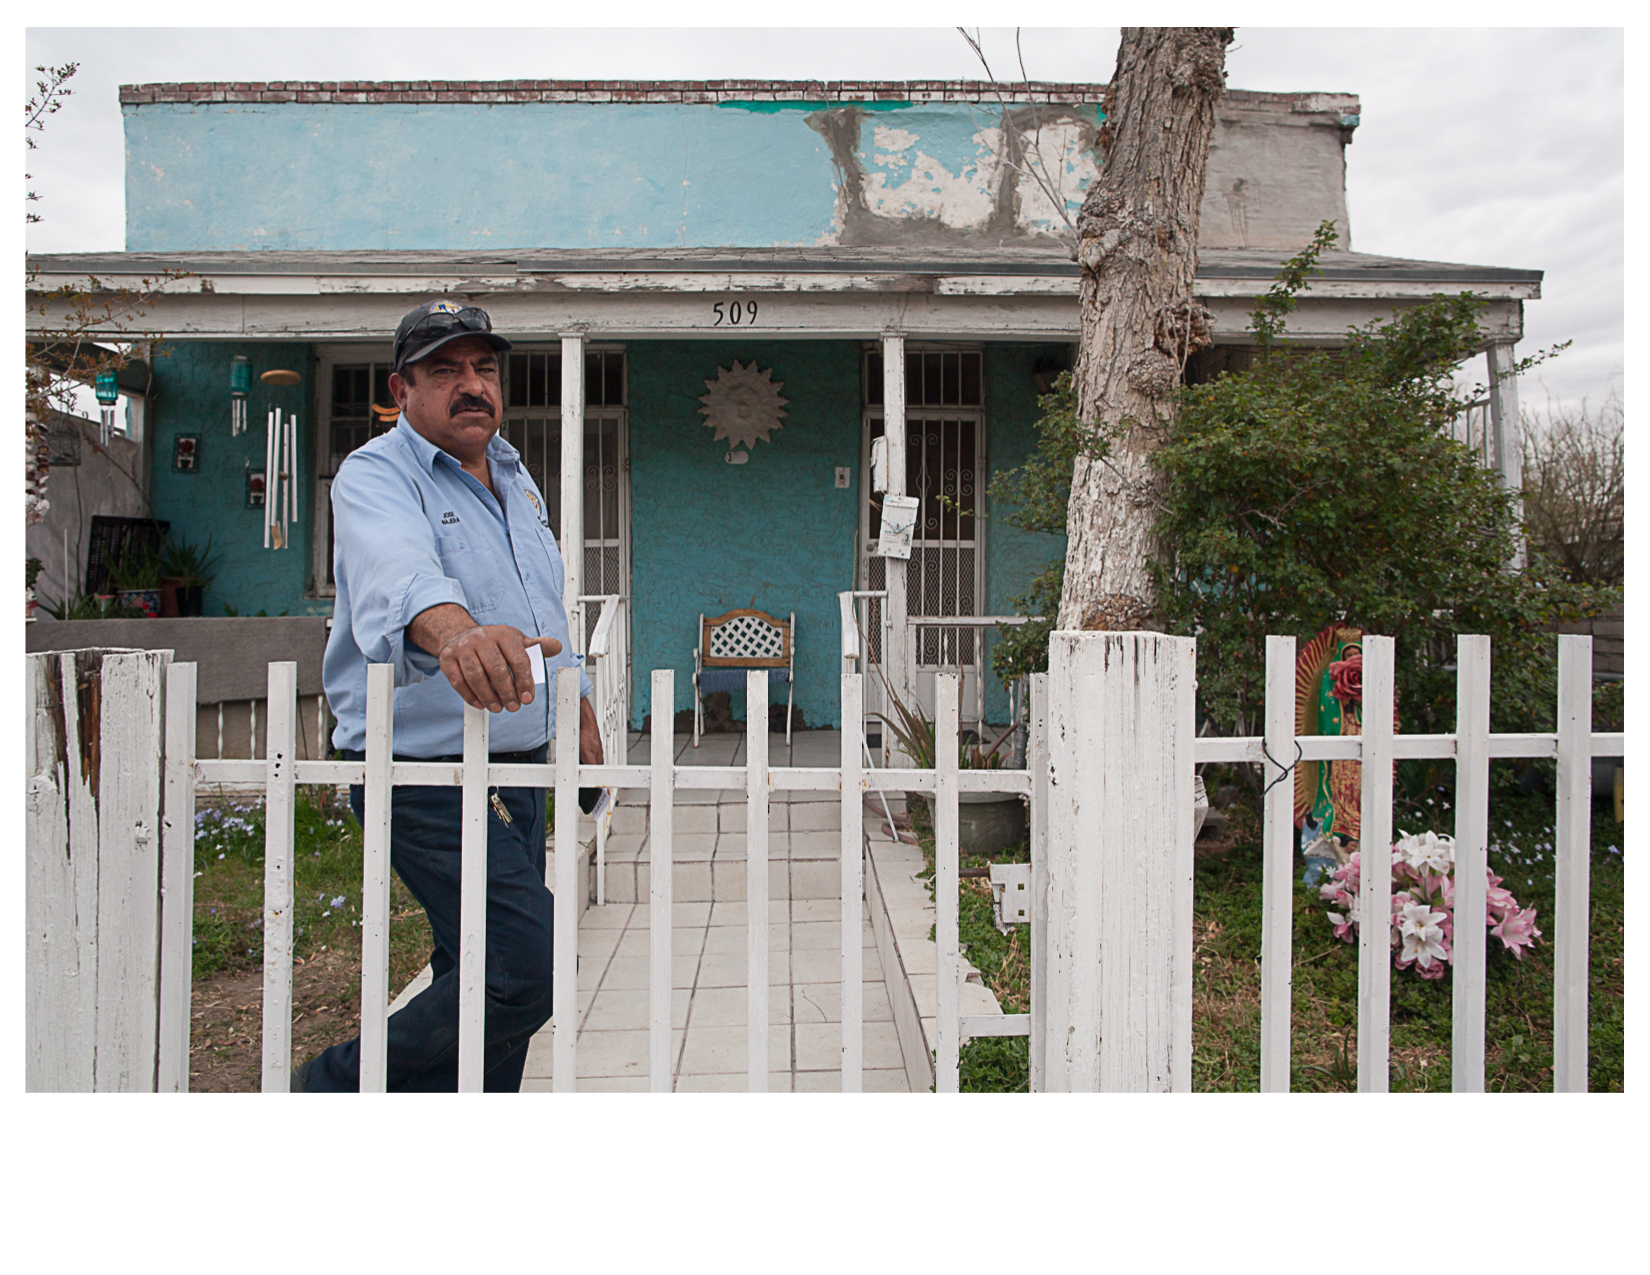 Jose outside his Mother's House in El Segundo Bario, El Paso, TX